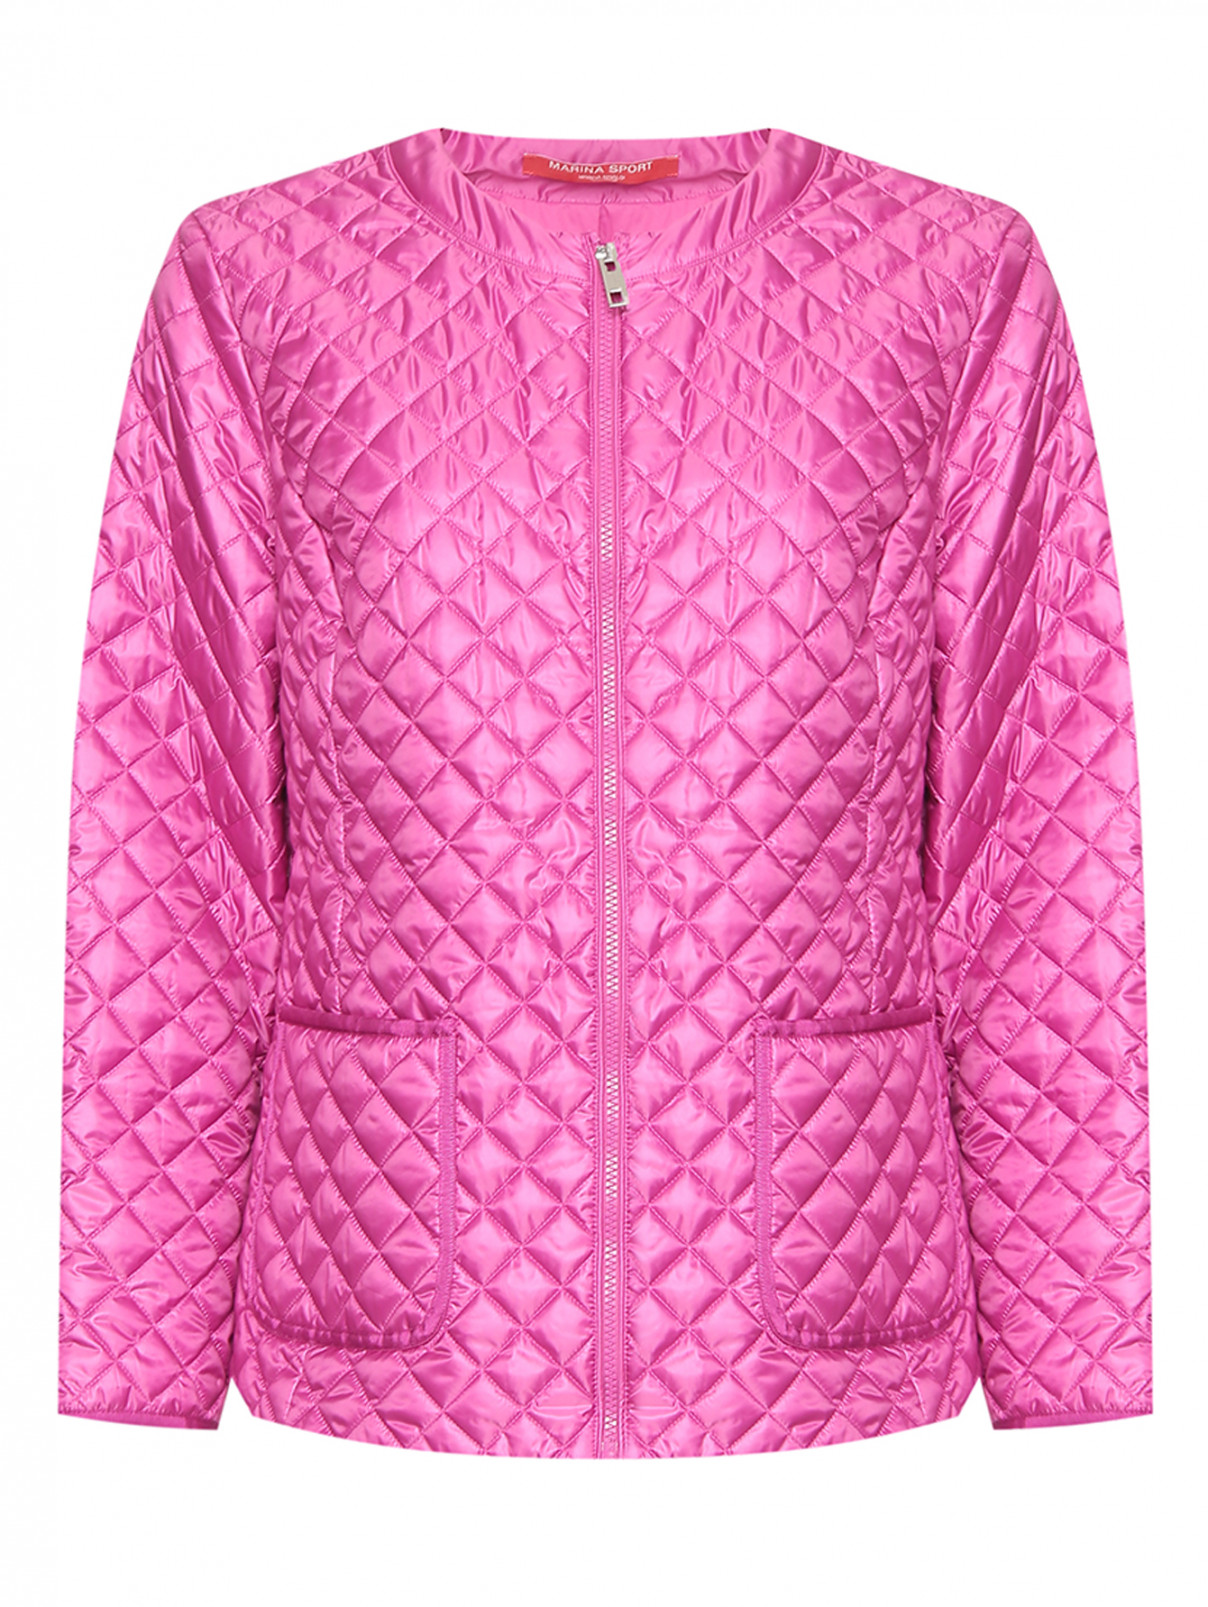 Стеганая куртка с накладными карманами Marina Rinaldi  –  Общий вид  – Цвет:  Фиолетовый